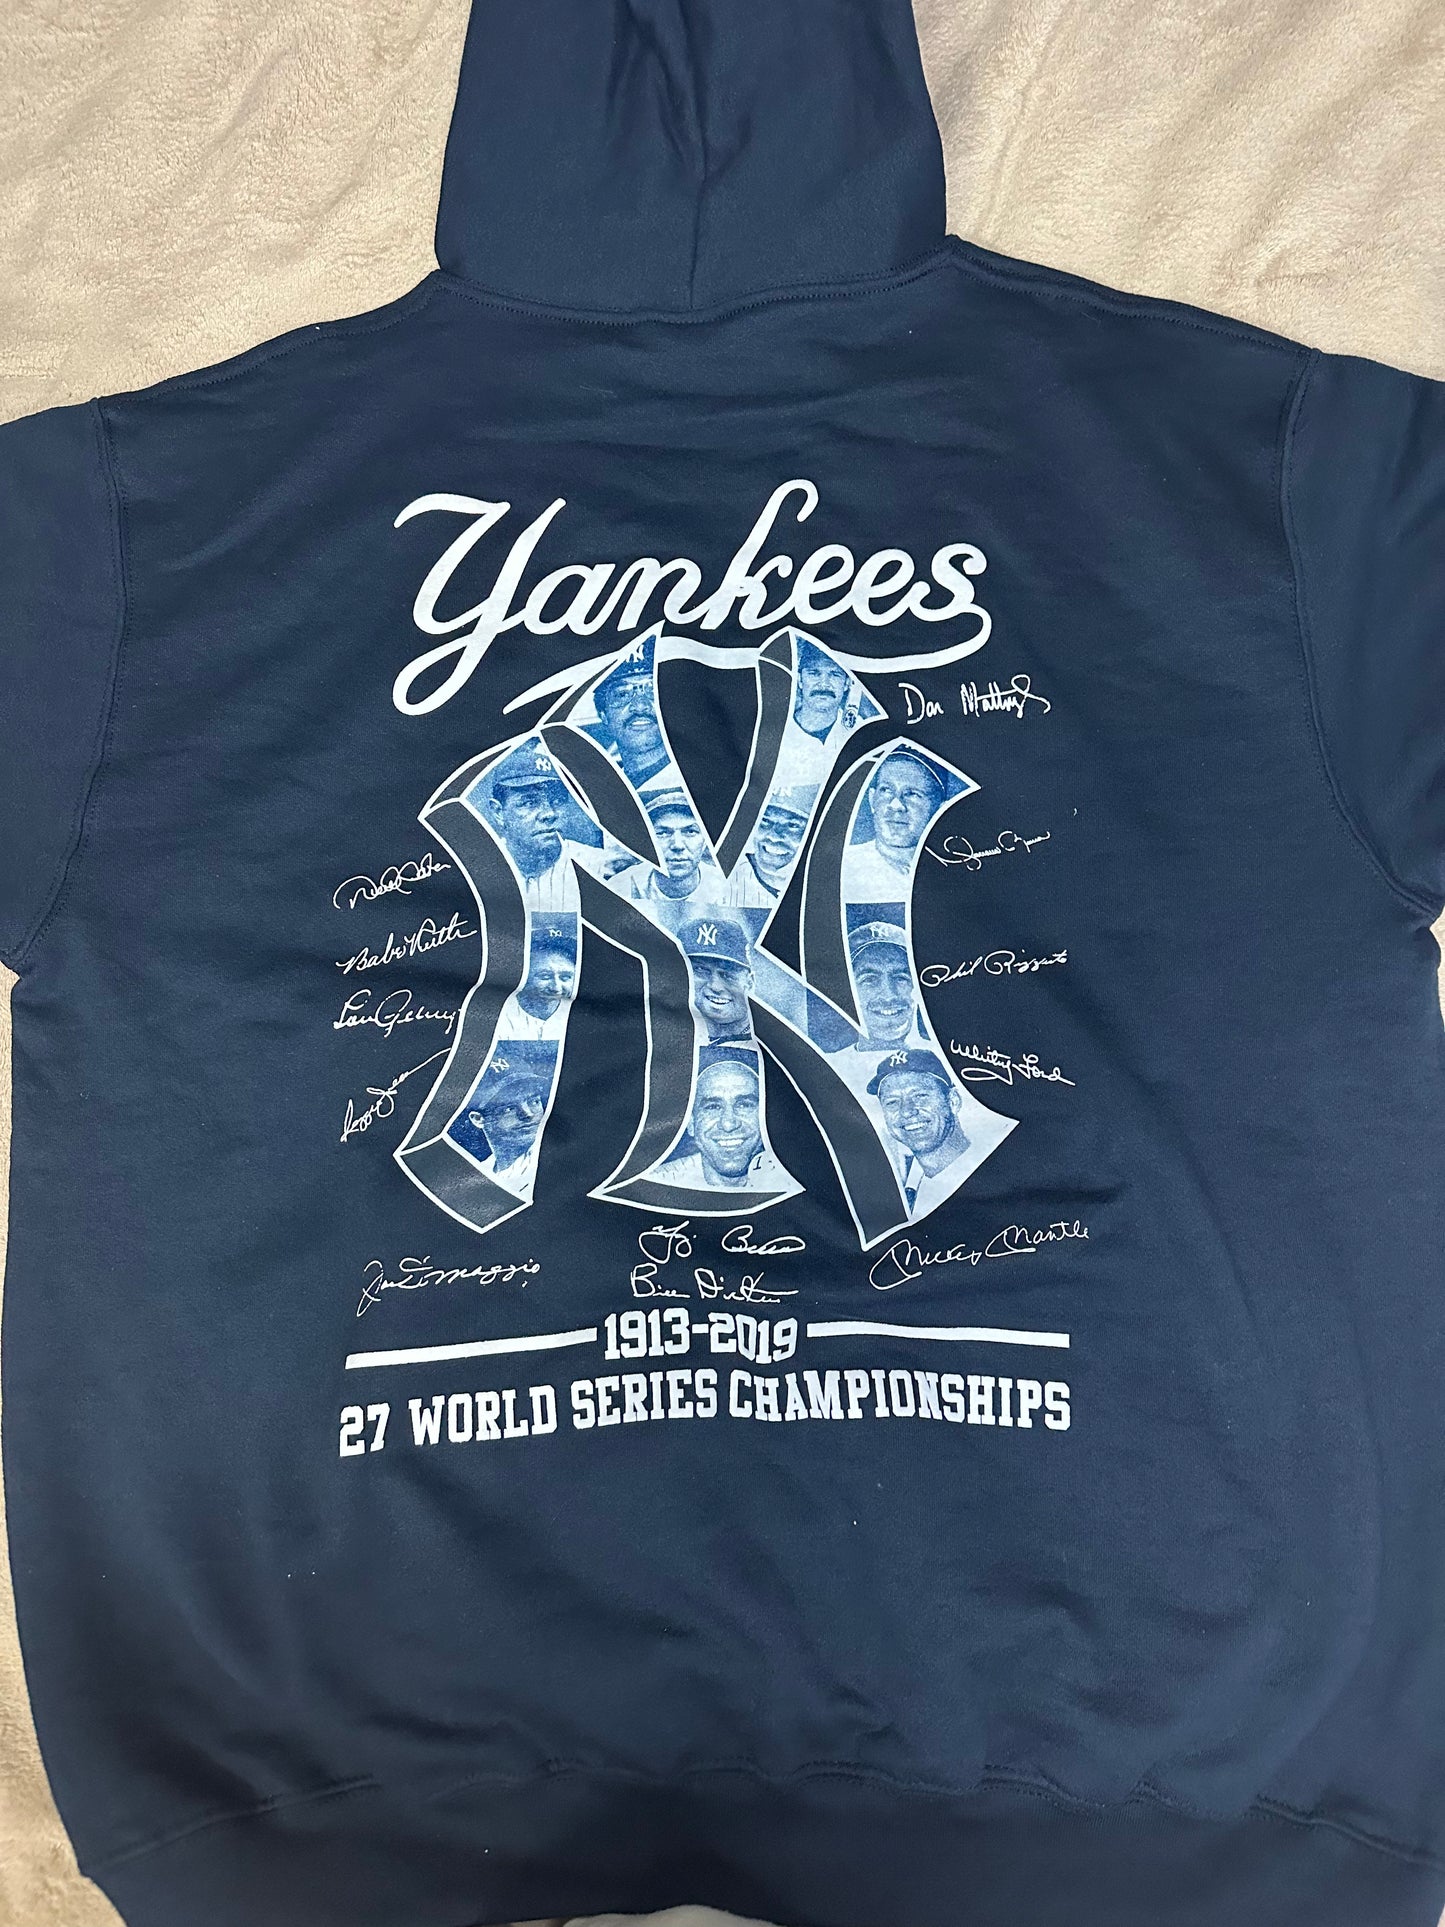 New York Yankees Hoodie